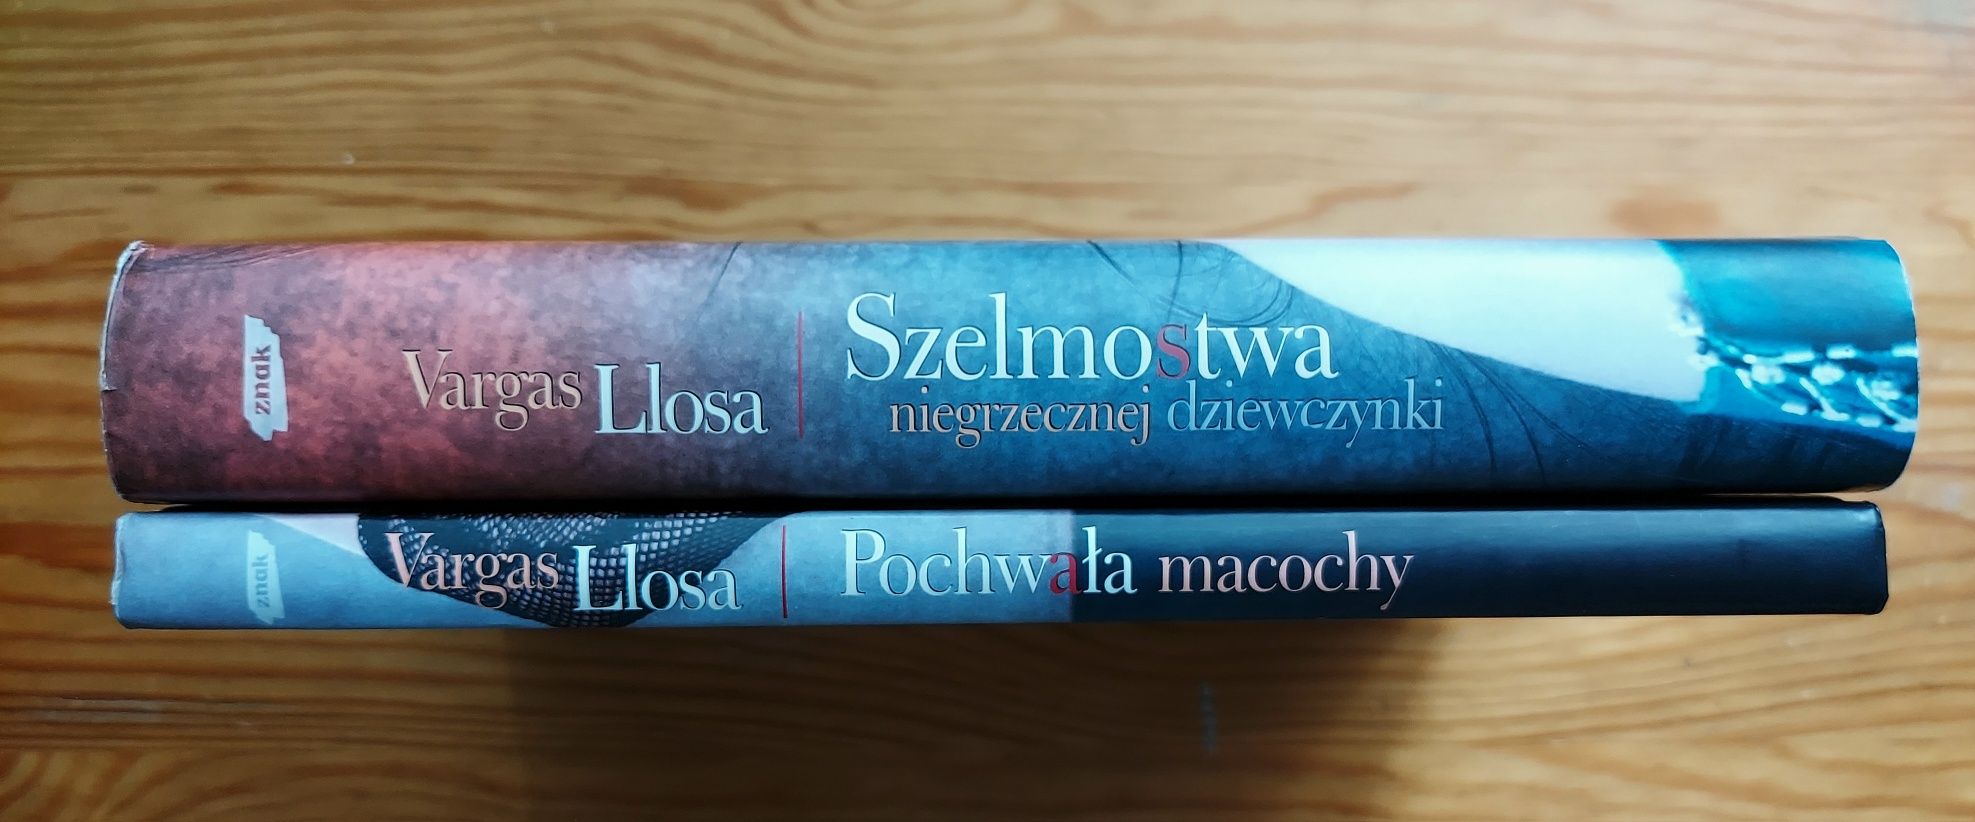 Książki M. V. Llosa "Szelmostwa..." i "Pochwała..."